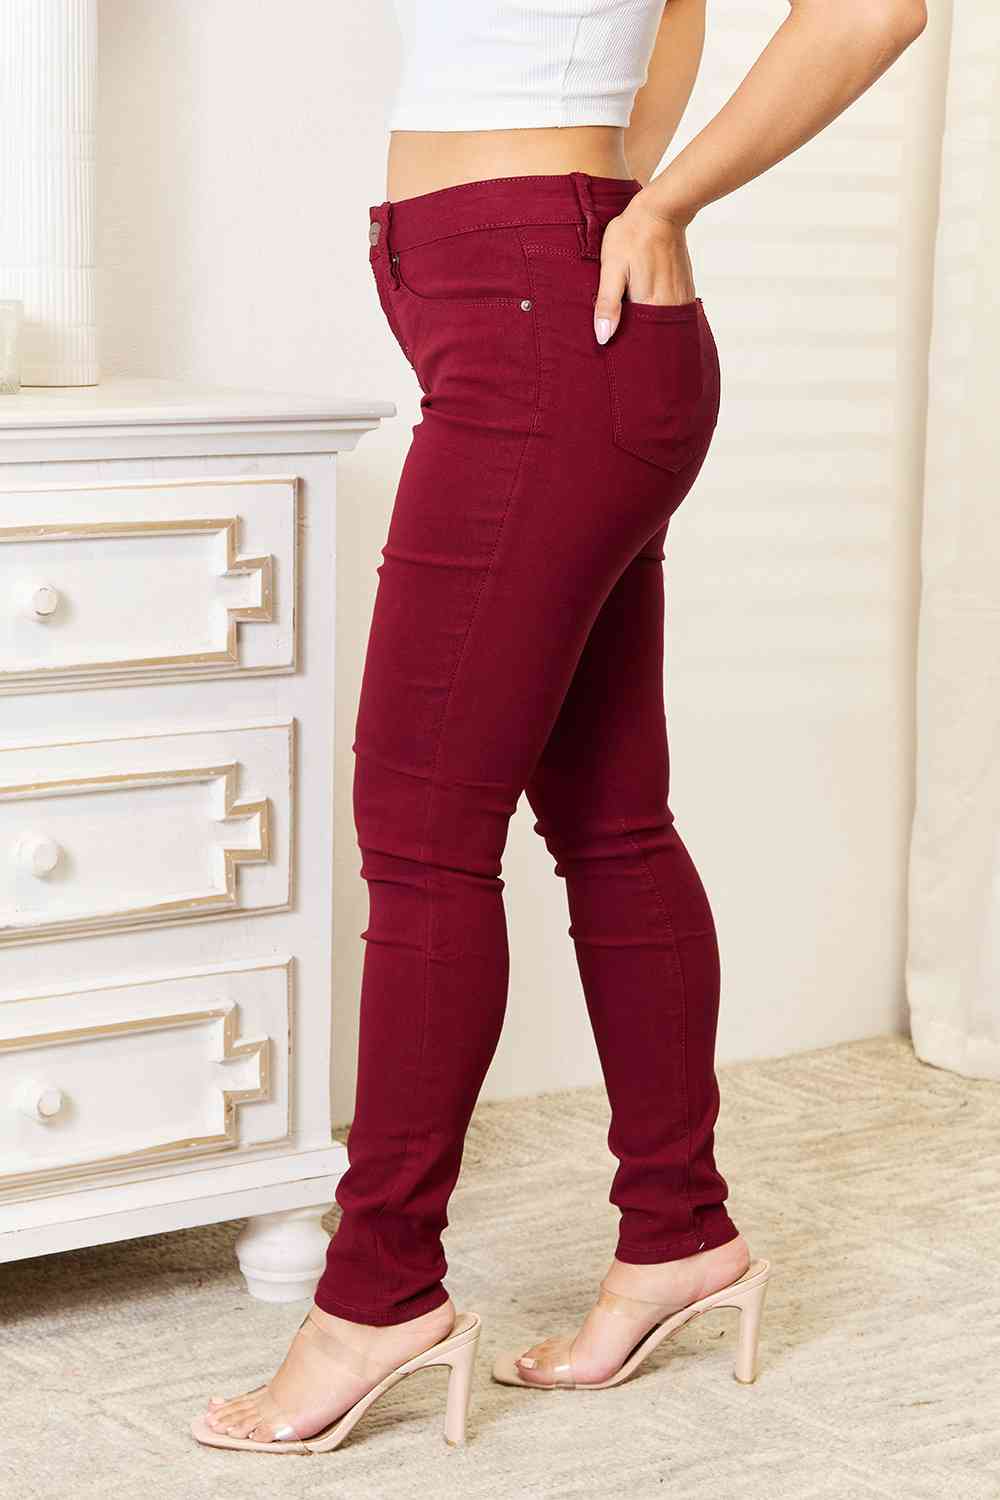 YMI Jeanswear Skinny Jeans with Pockets - By Baano